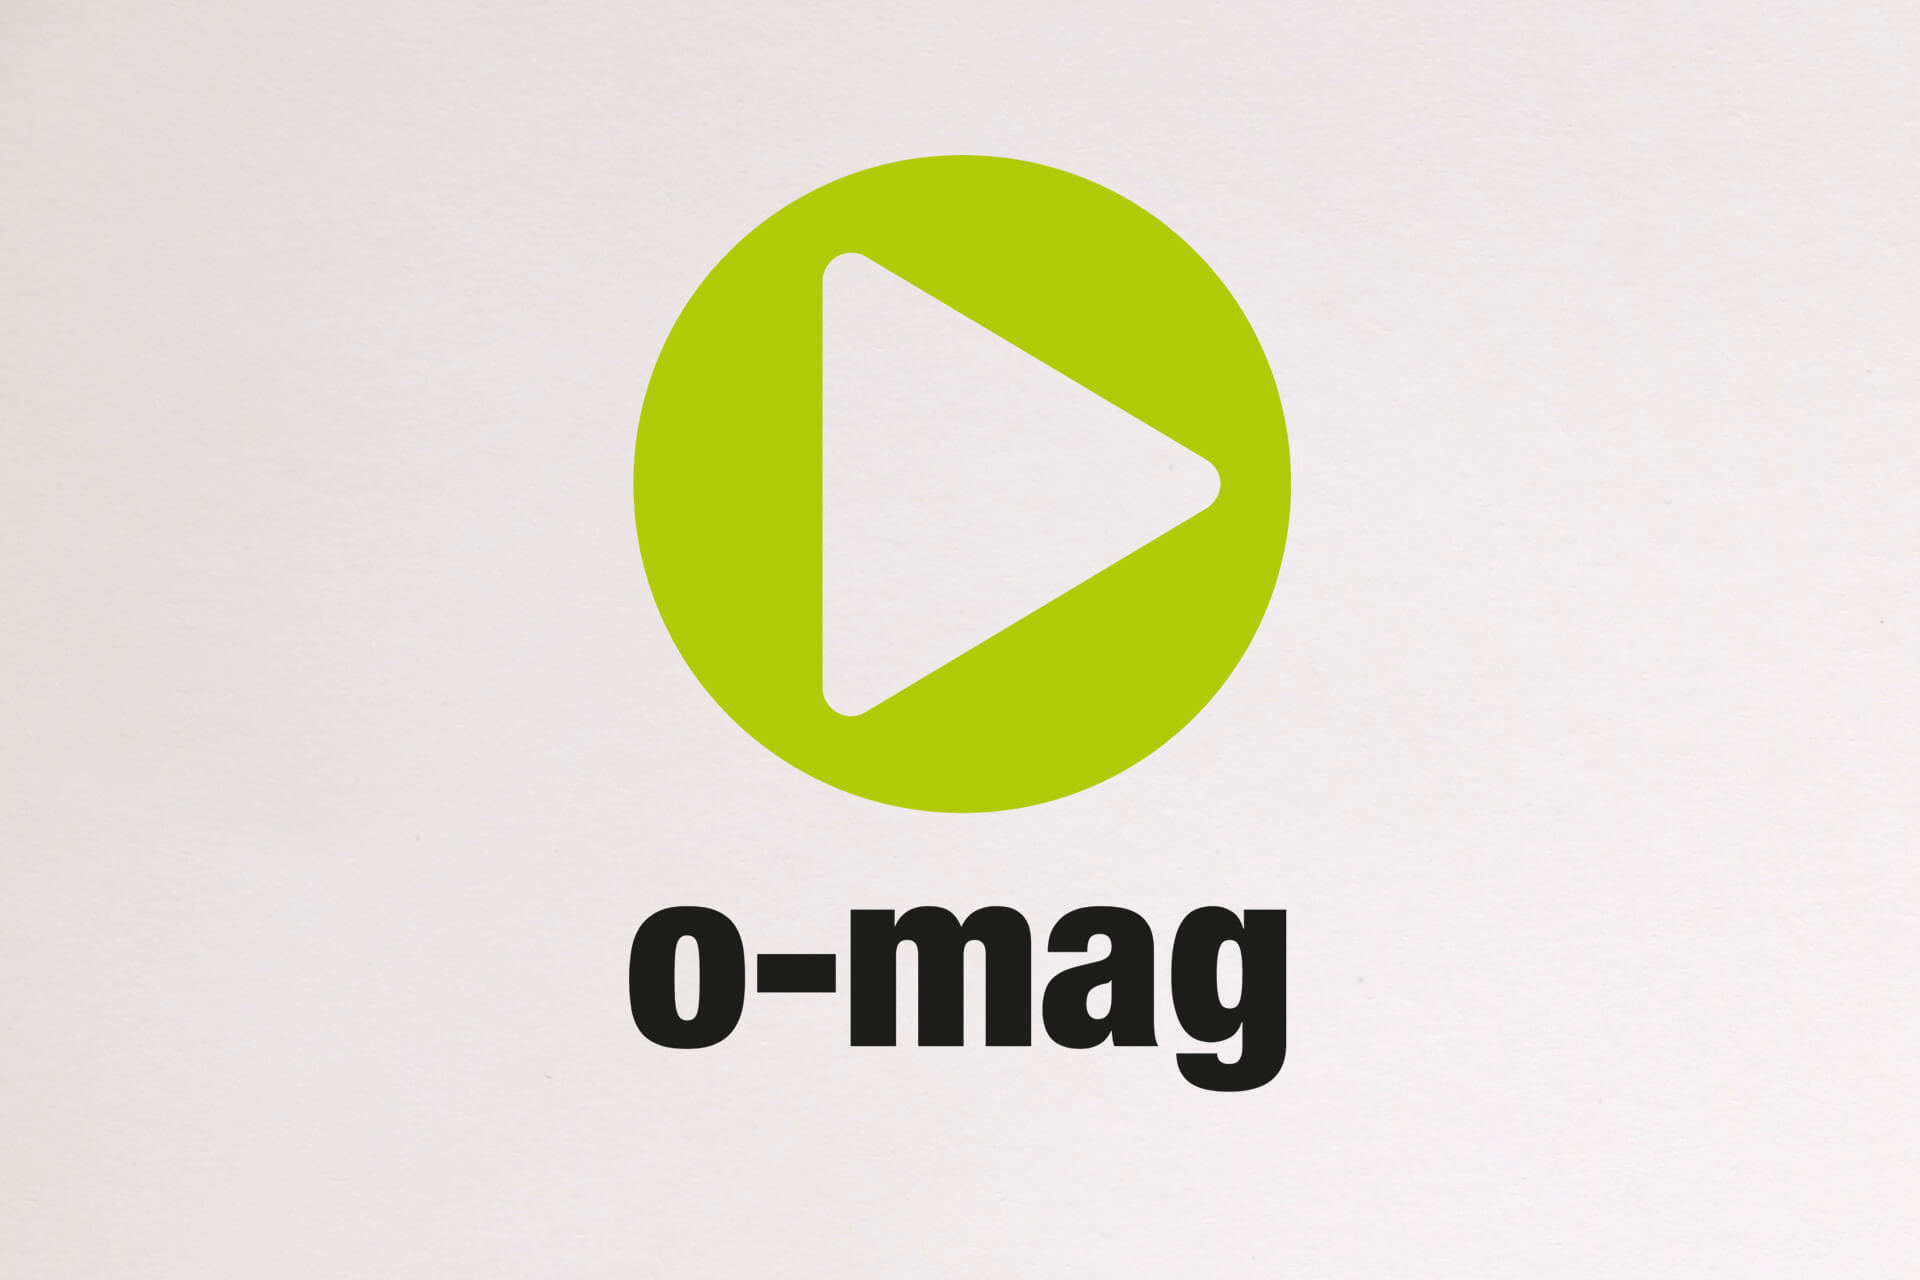 Abbildung des Logos für „o-mag“: ein knallgrüner Kreis mit Pfeil-Icon und schwarzer Typografie unter dem Icon